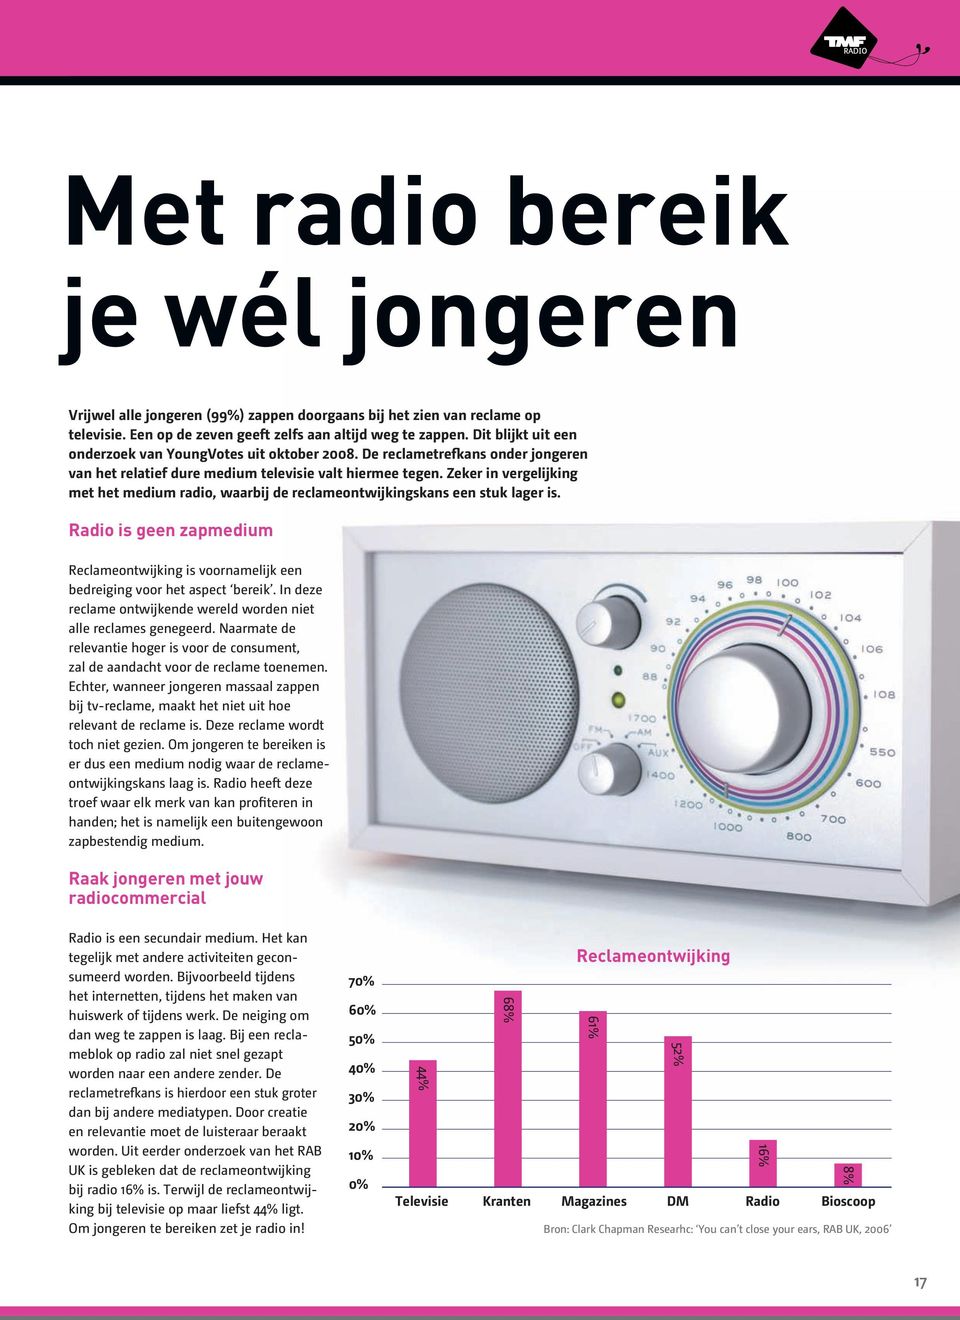 Zeker in vergelijking met het medium radio, waarbij de reclameontwijkingskans een stuk lager is. Radio is geen zapmedium Reclameontwijking is voornamelijk een bedreiging voor het aspect bereik.